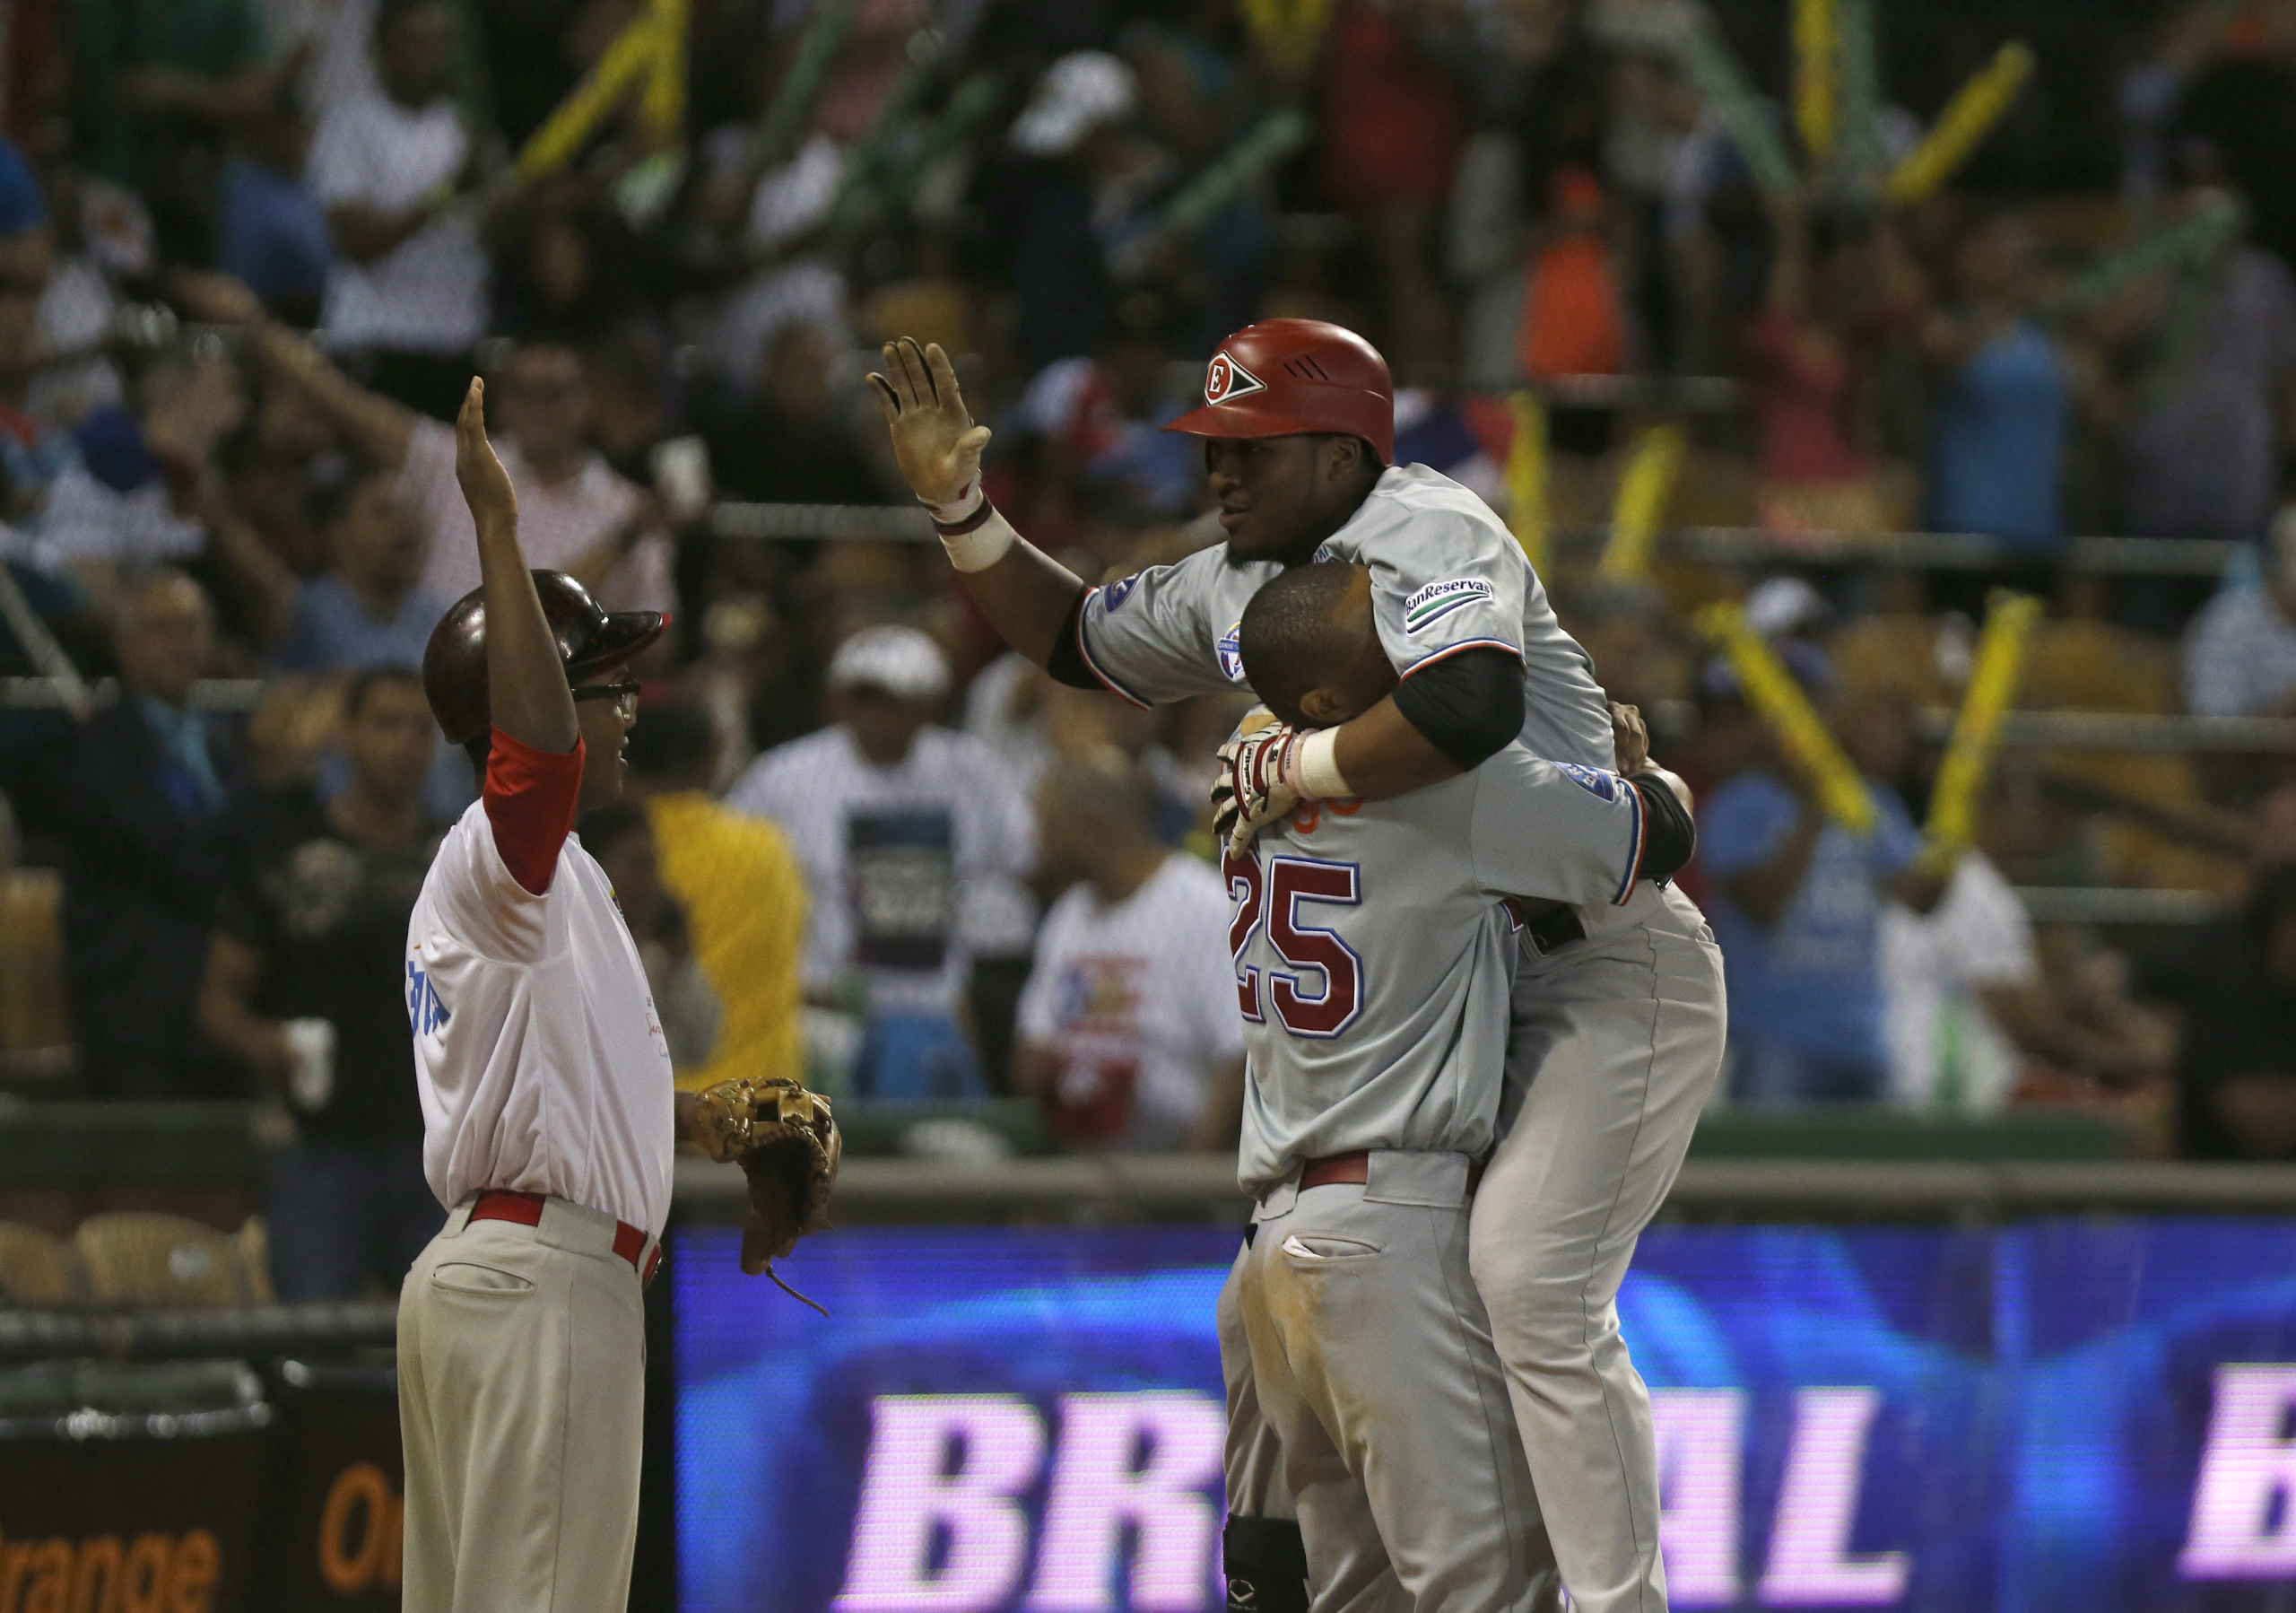 wp image 3742 scaled - Leones y Gigantes se colocan a medio juego del liderato en el béisbol dominicano